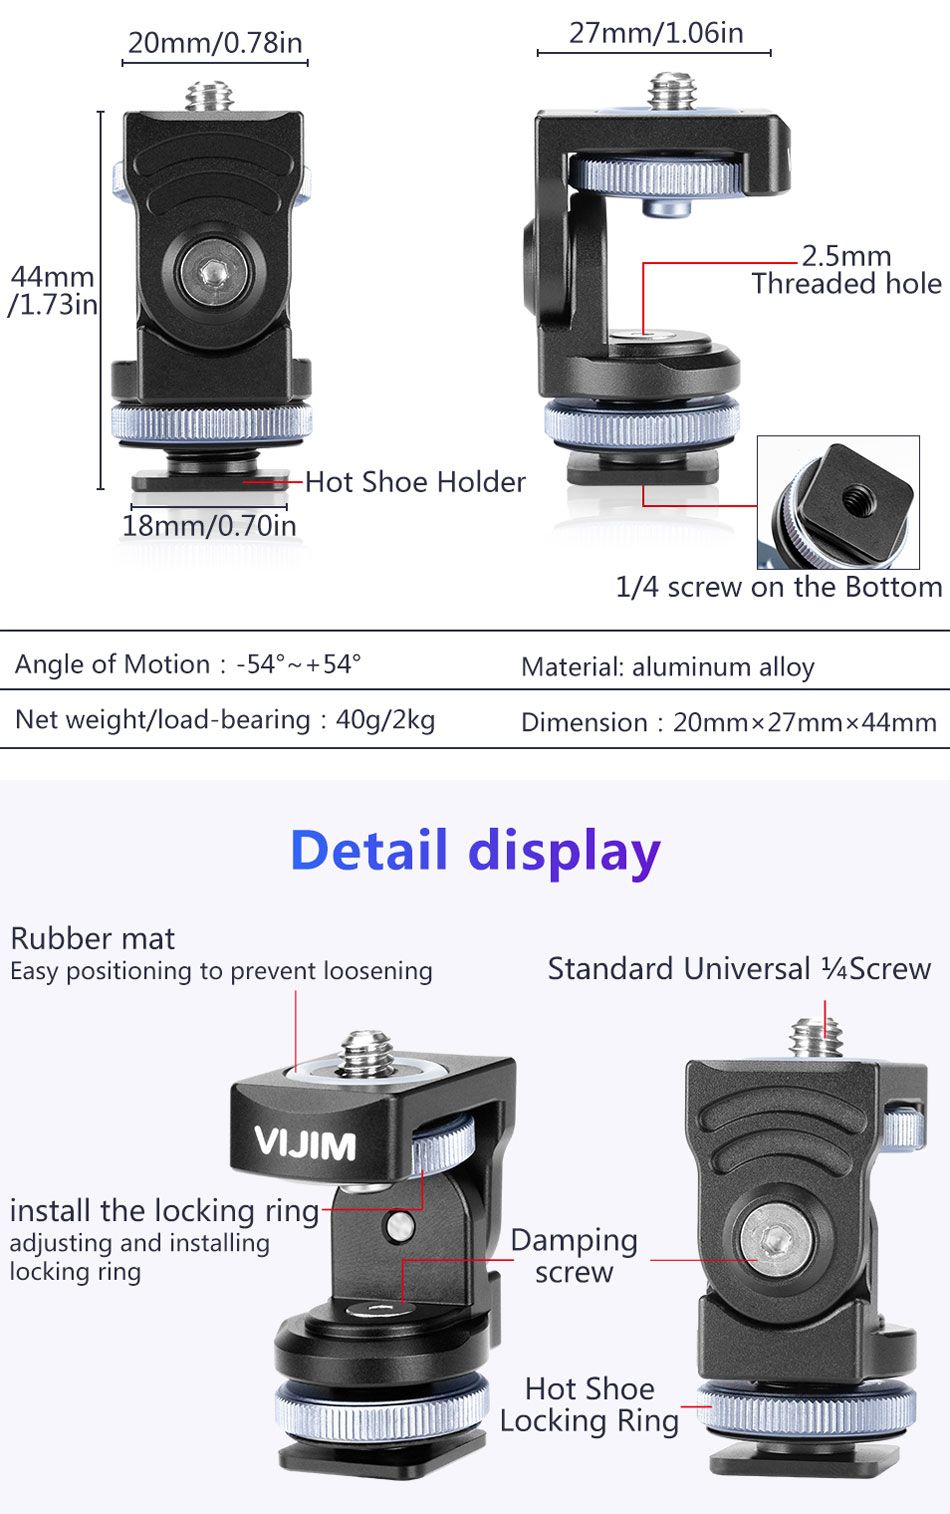 VIJIM-VK-2-360-Degree-Rotation-Hot-Shoe-Cold-Shoe-Mount-Bracket-Holder-for-DSLR-Camera-1453763